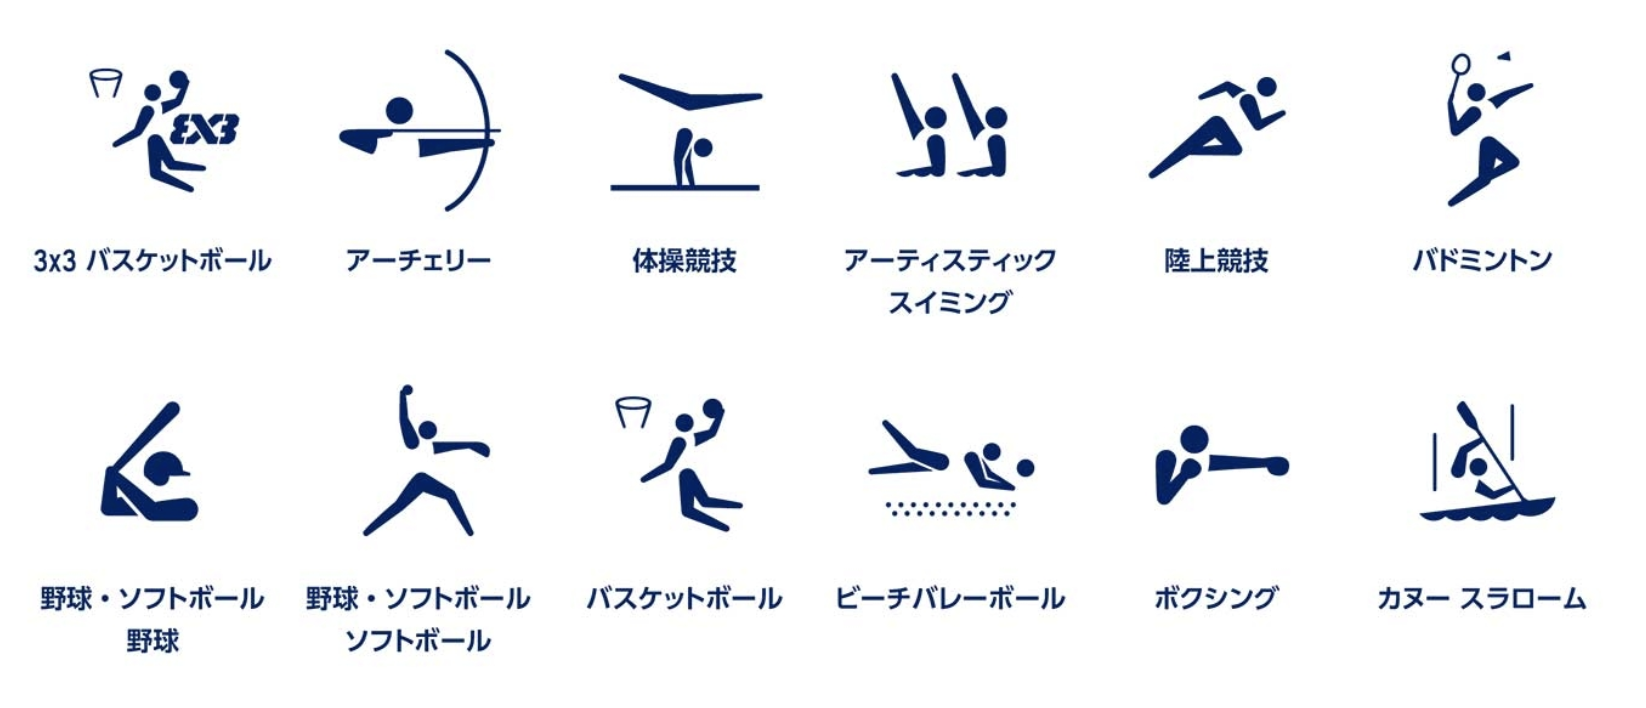 東京2020オリンピックスポーツピクトグラム